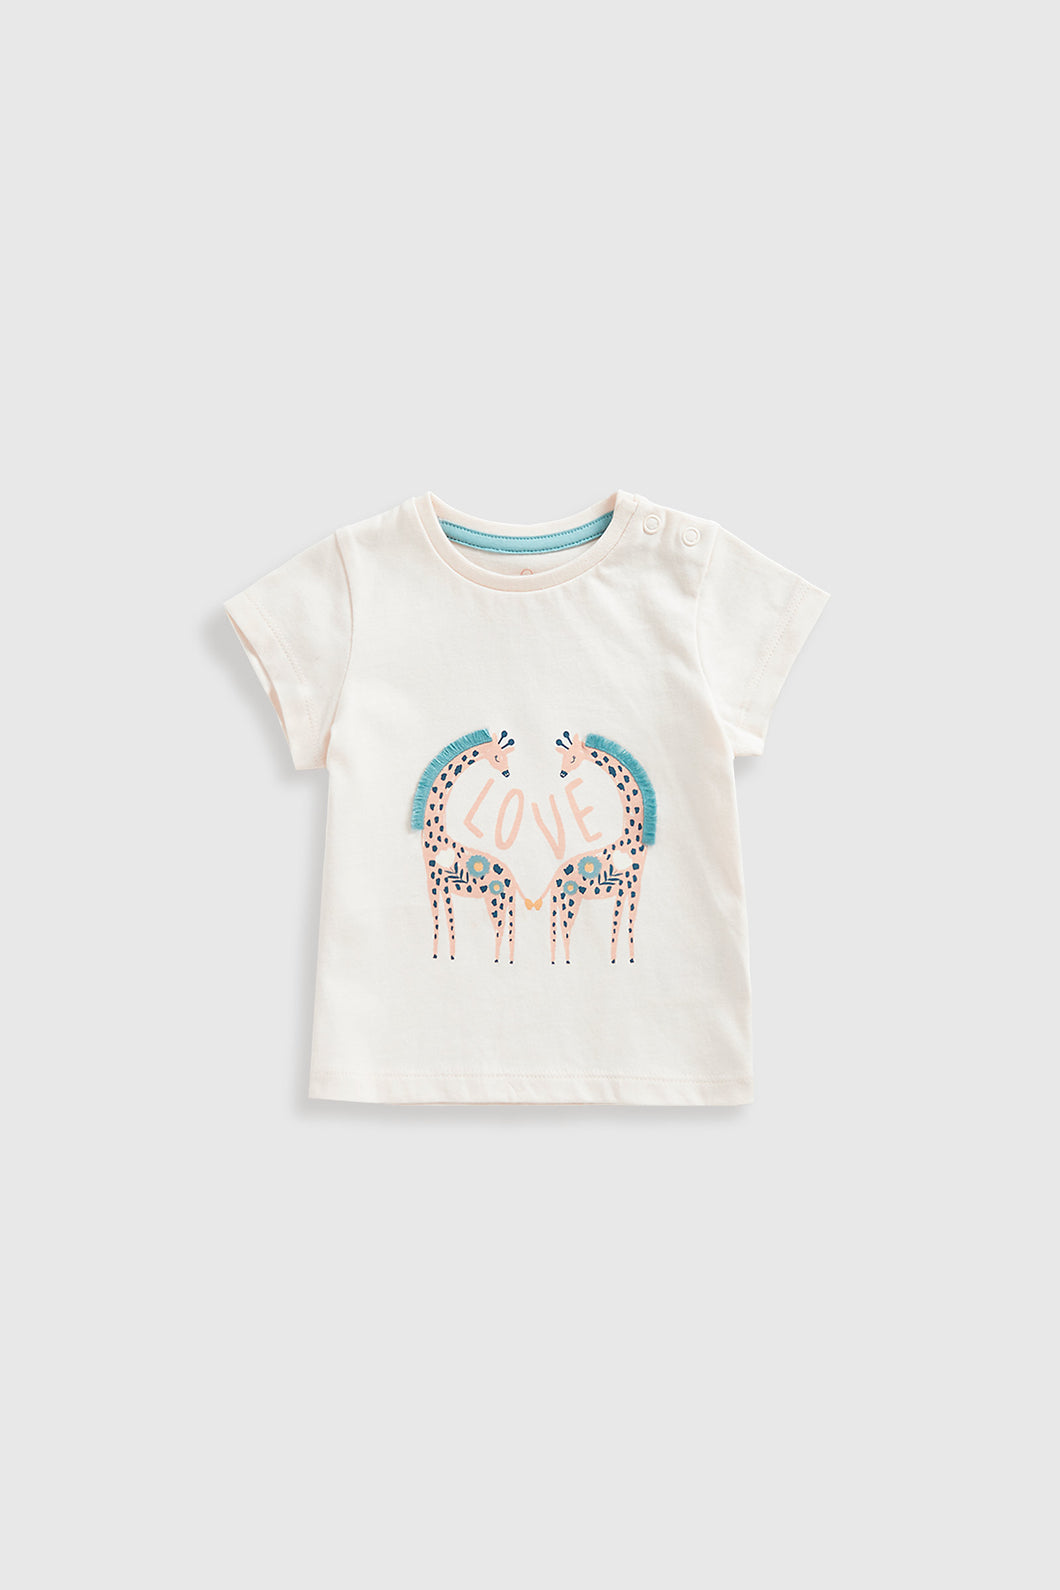 Mothercare Giraffe T-Shirt